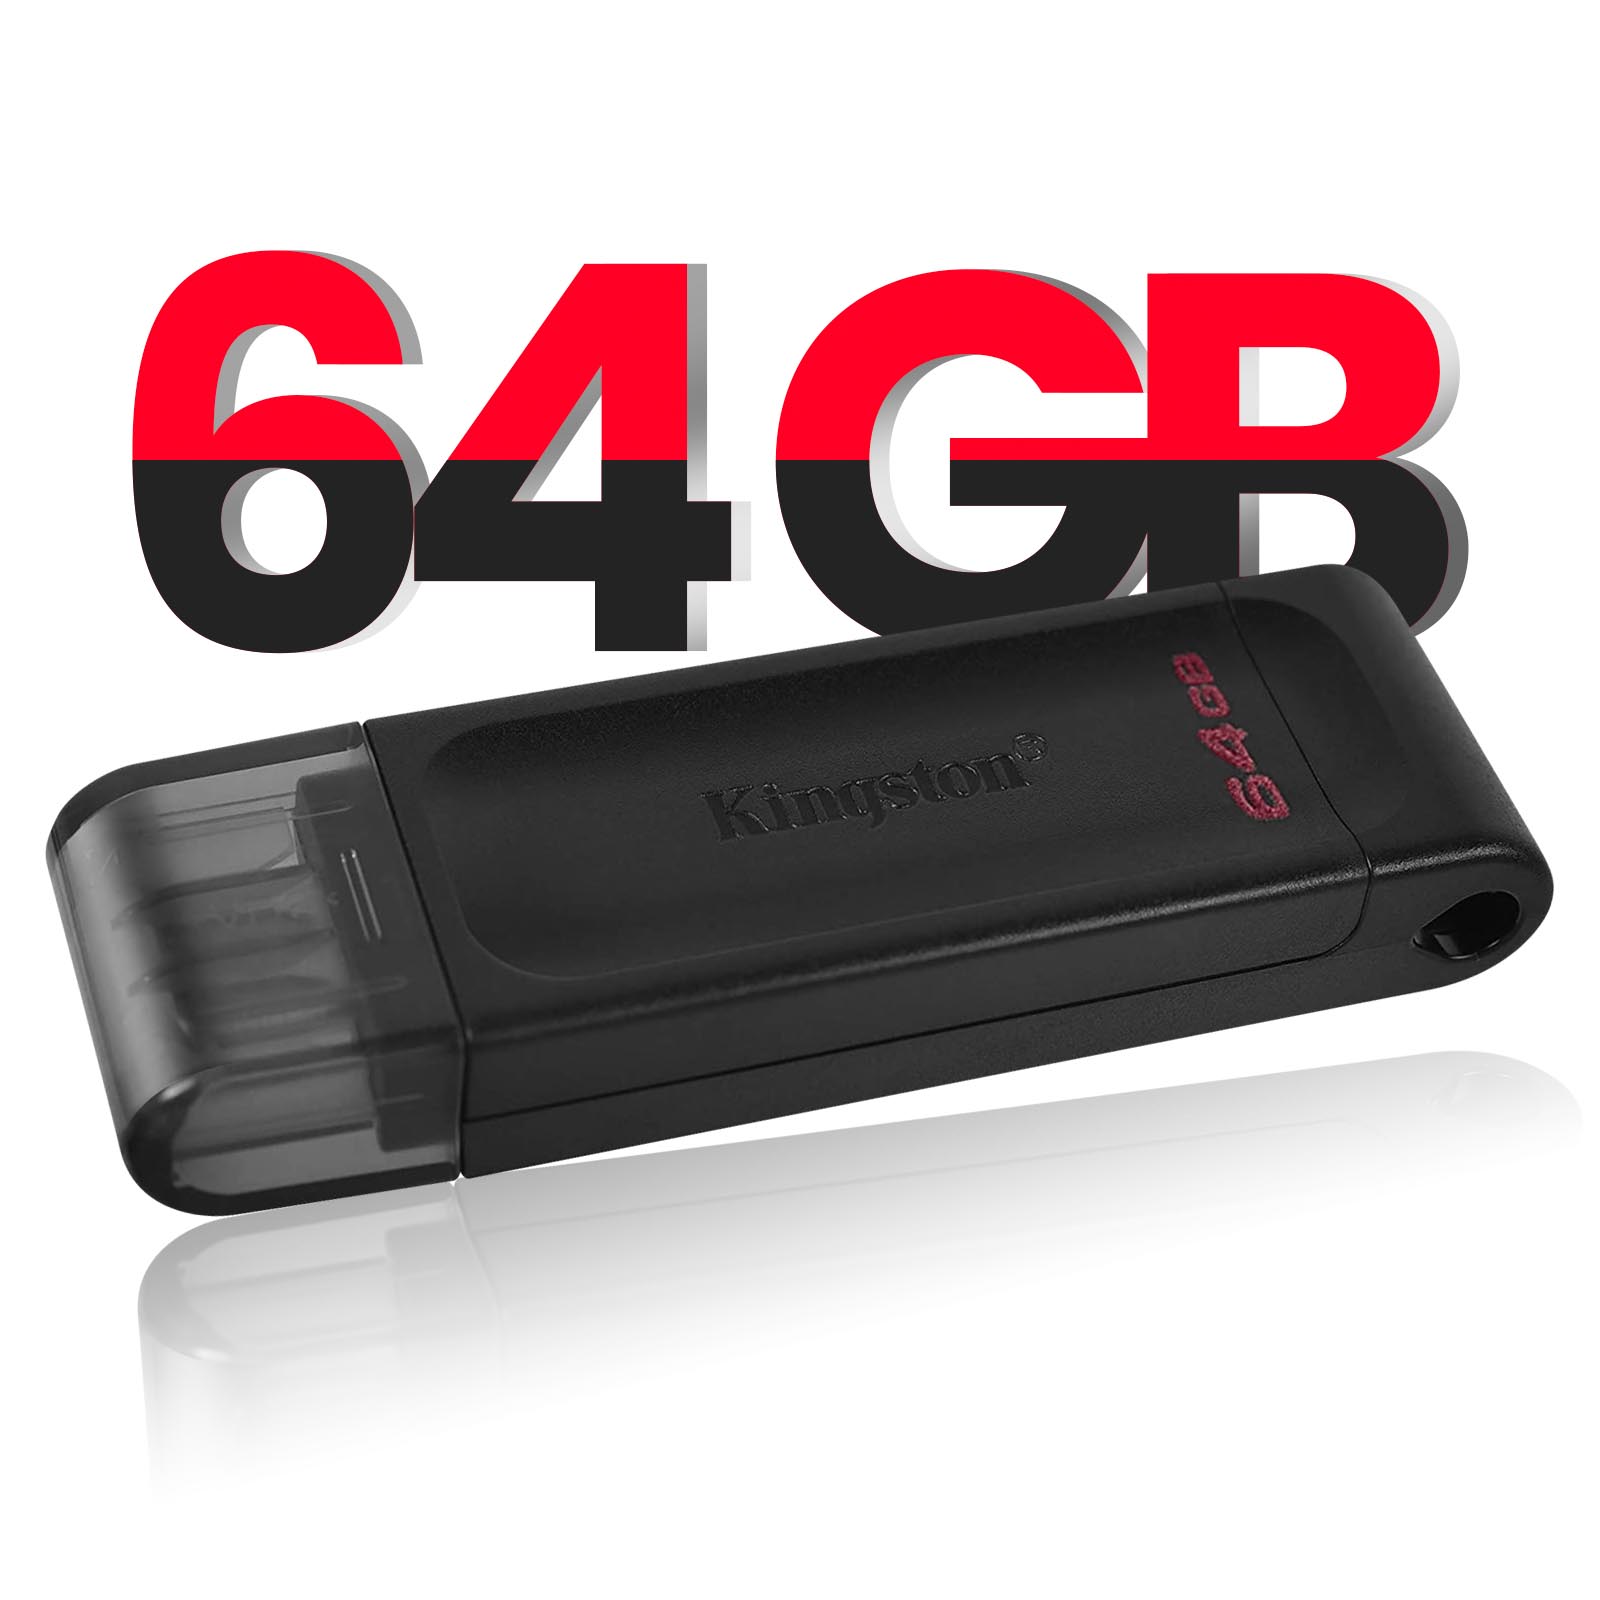 KINGSTON - Clé USB DataTraveler 70 64 GB KINGSTON